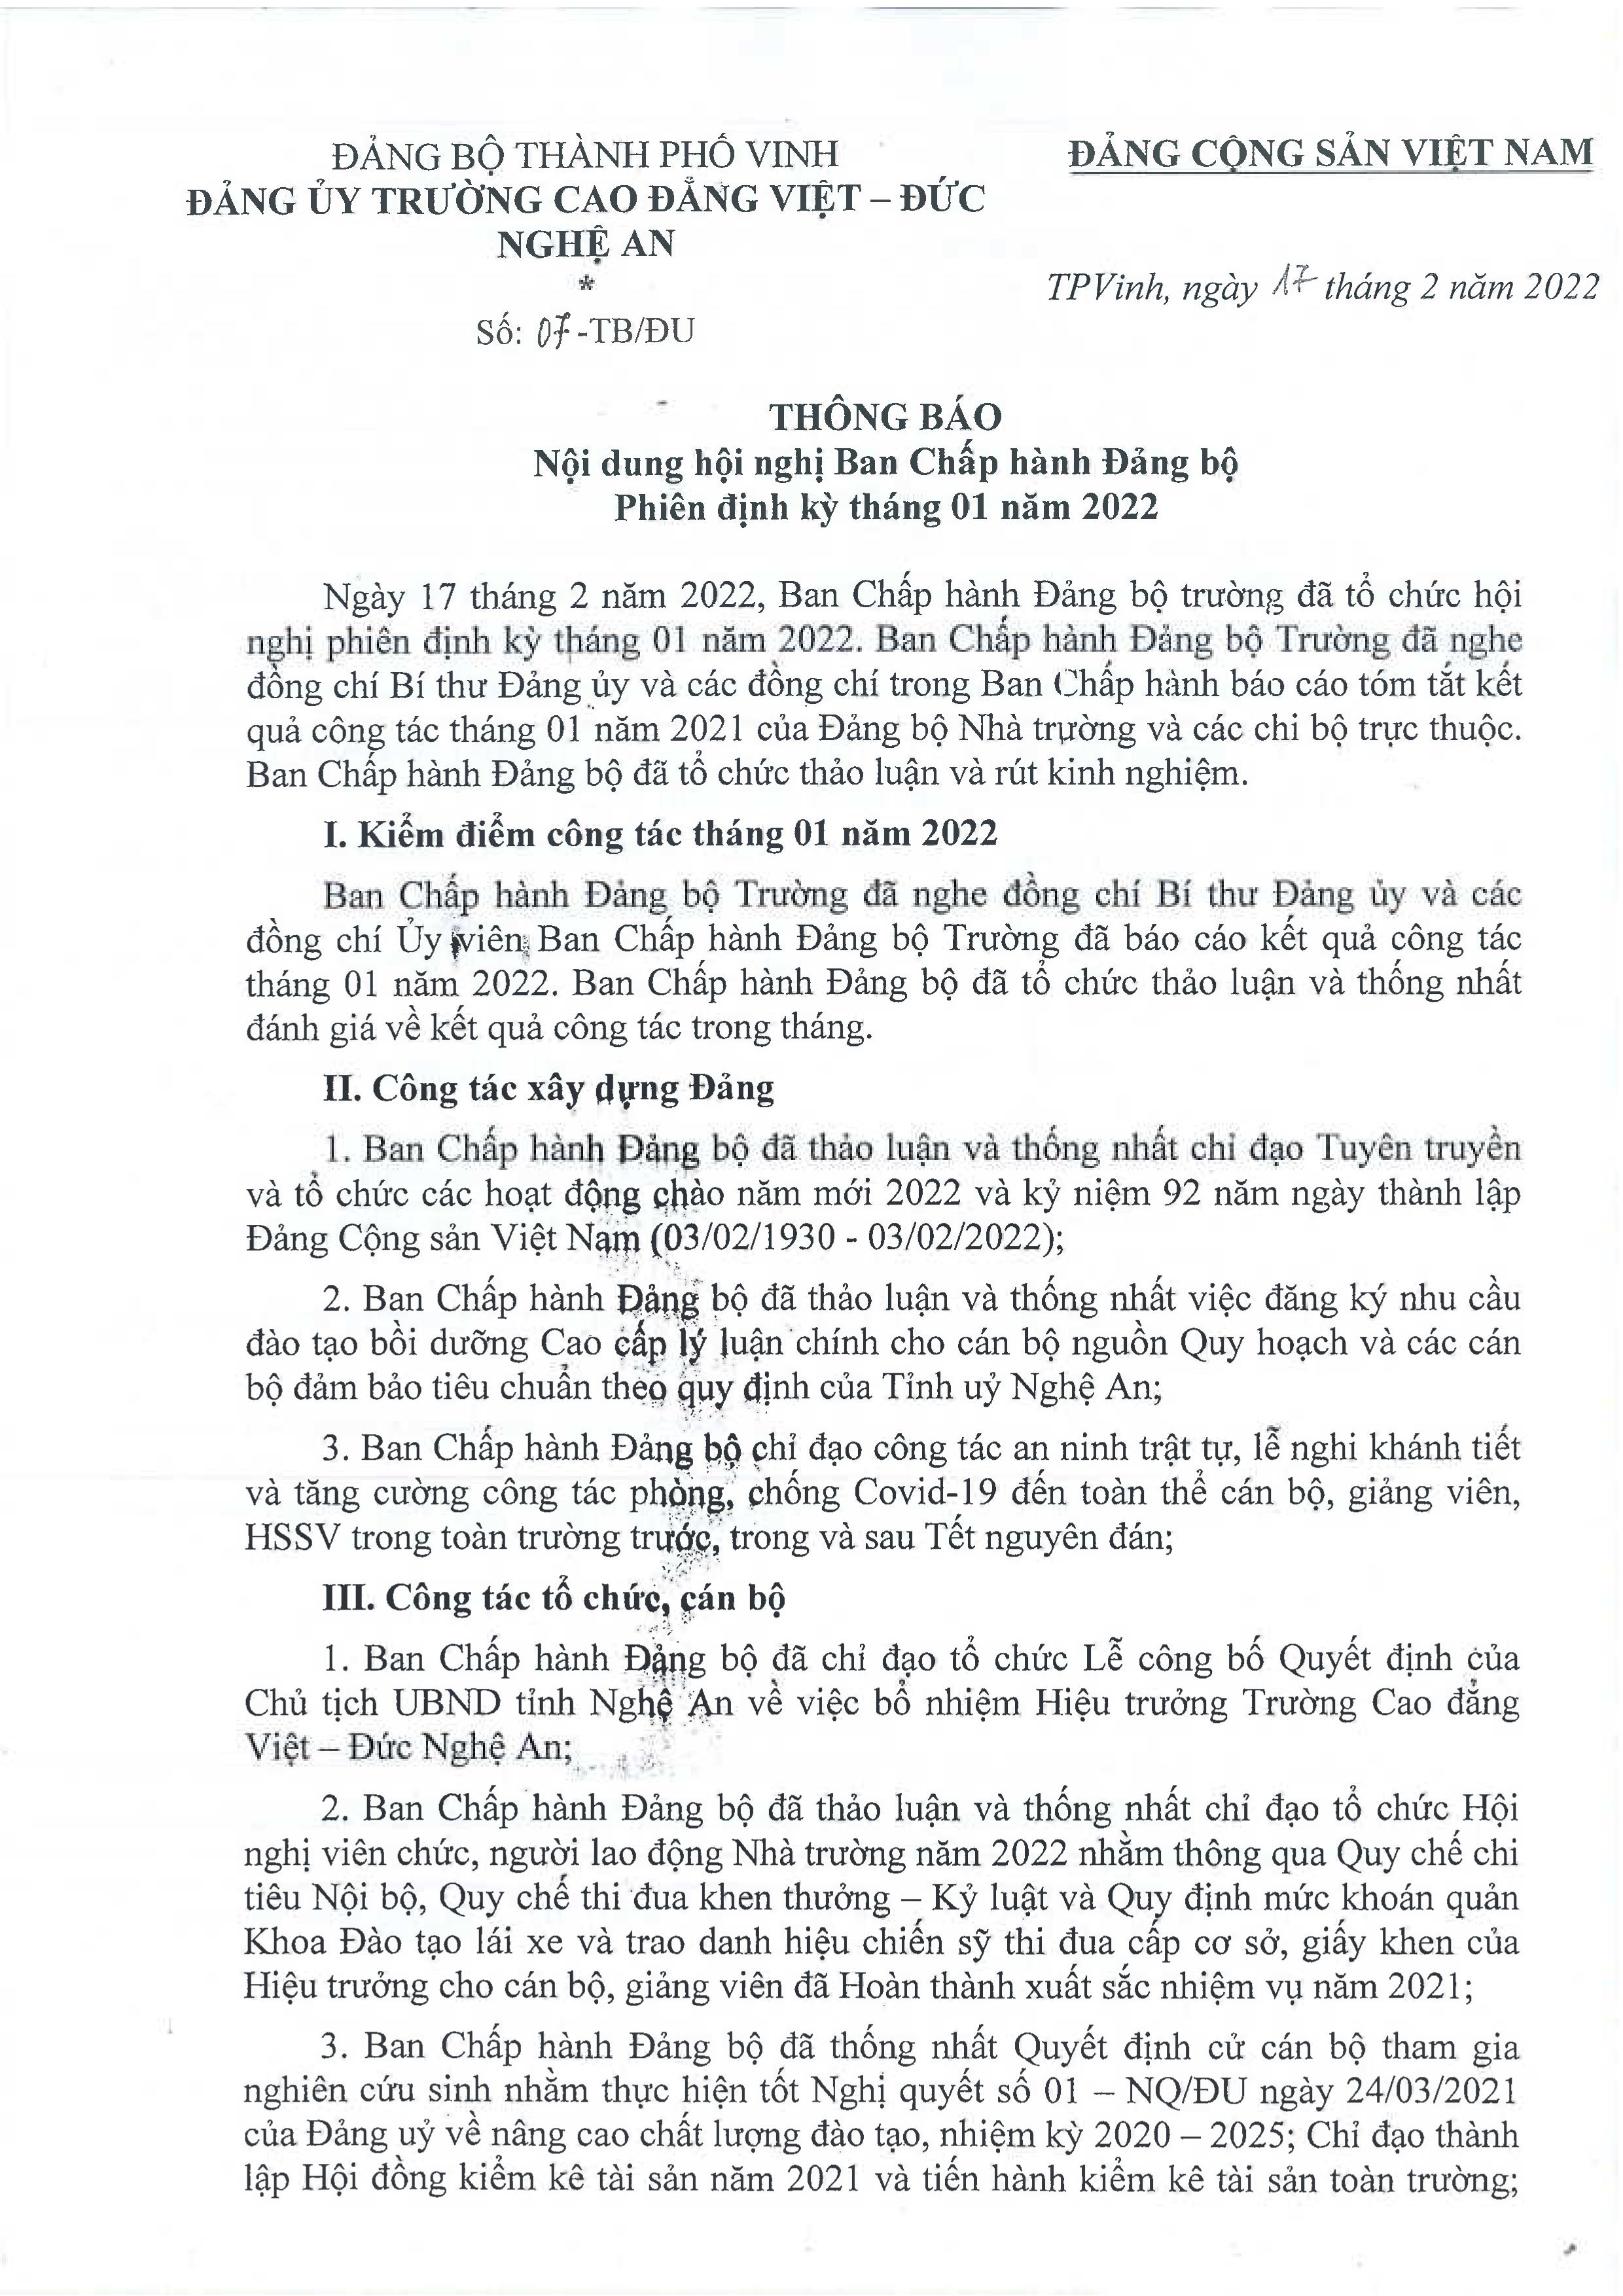 Thông báo số 07-TB/ĐU ngày 17/02/2022 của Đảng ủy Trường Cao đẳng Việt - Đức Nghệ An về Nội dung Hội nghị Ban Chấp hành Đảng bộ phiên định kỳ tháng 01 năm 2022